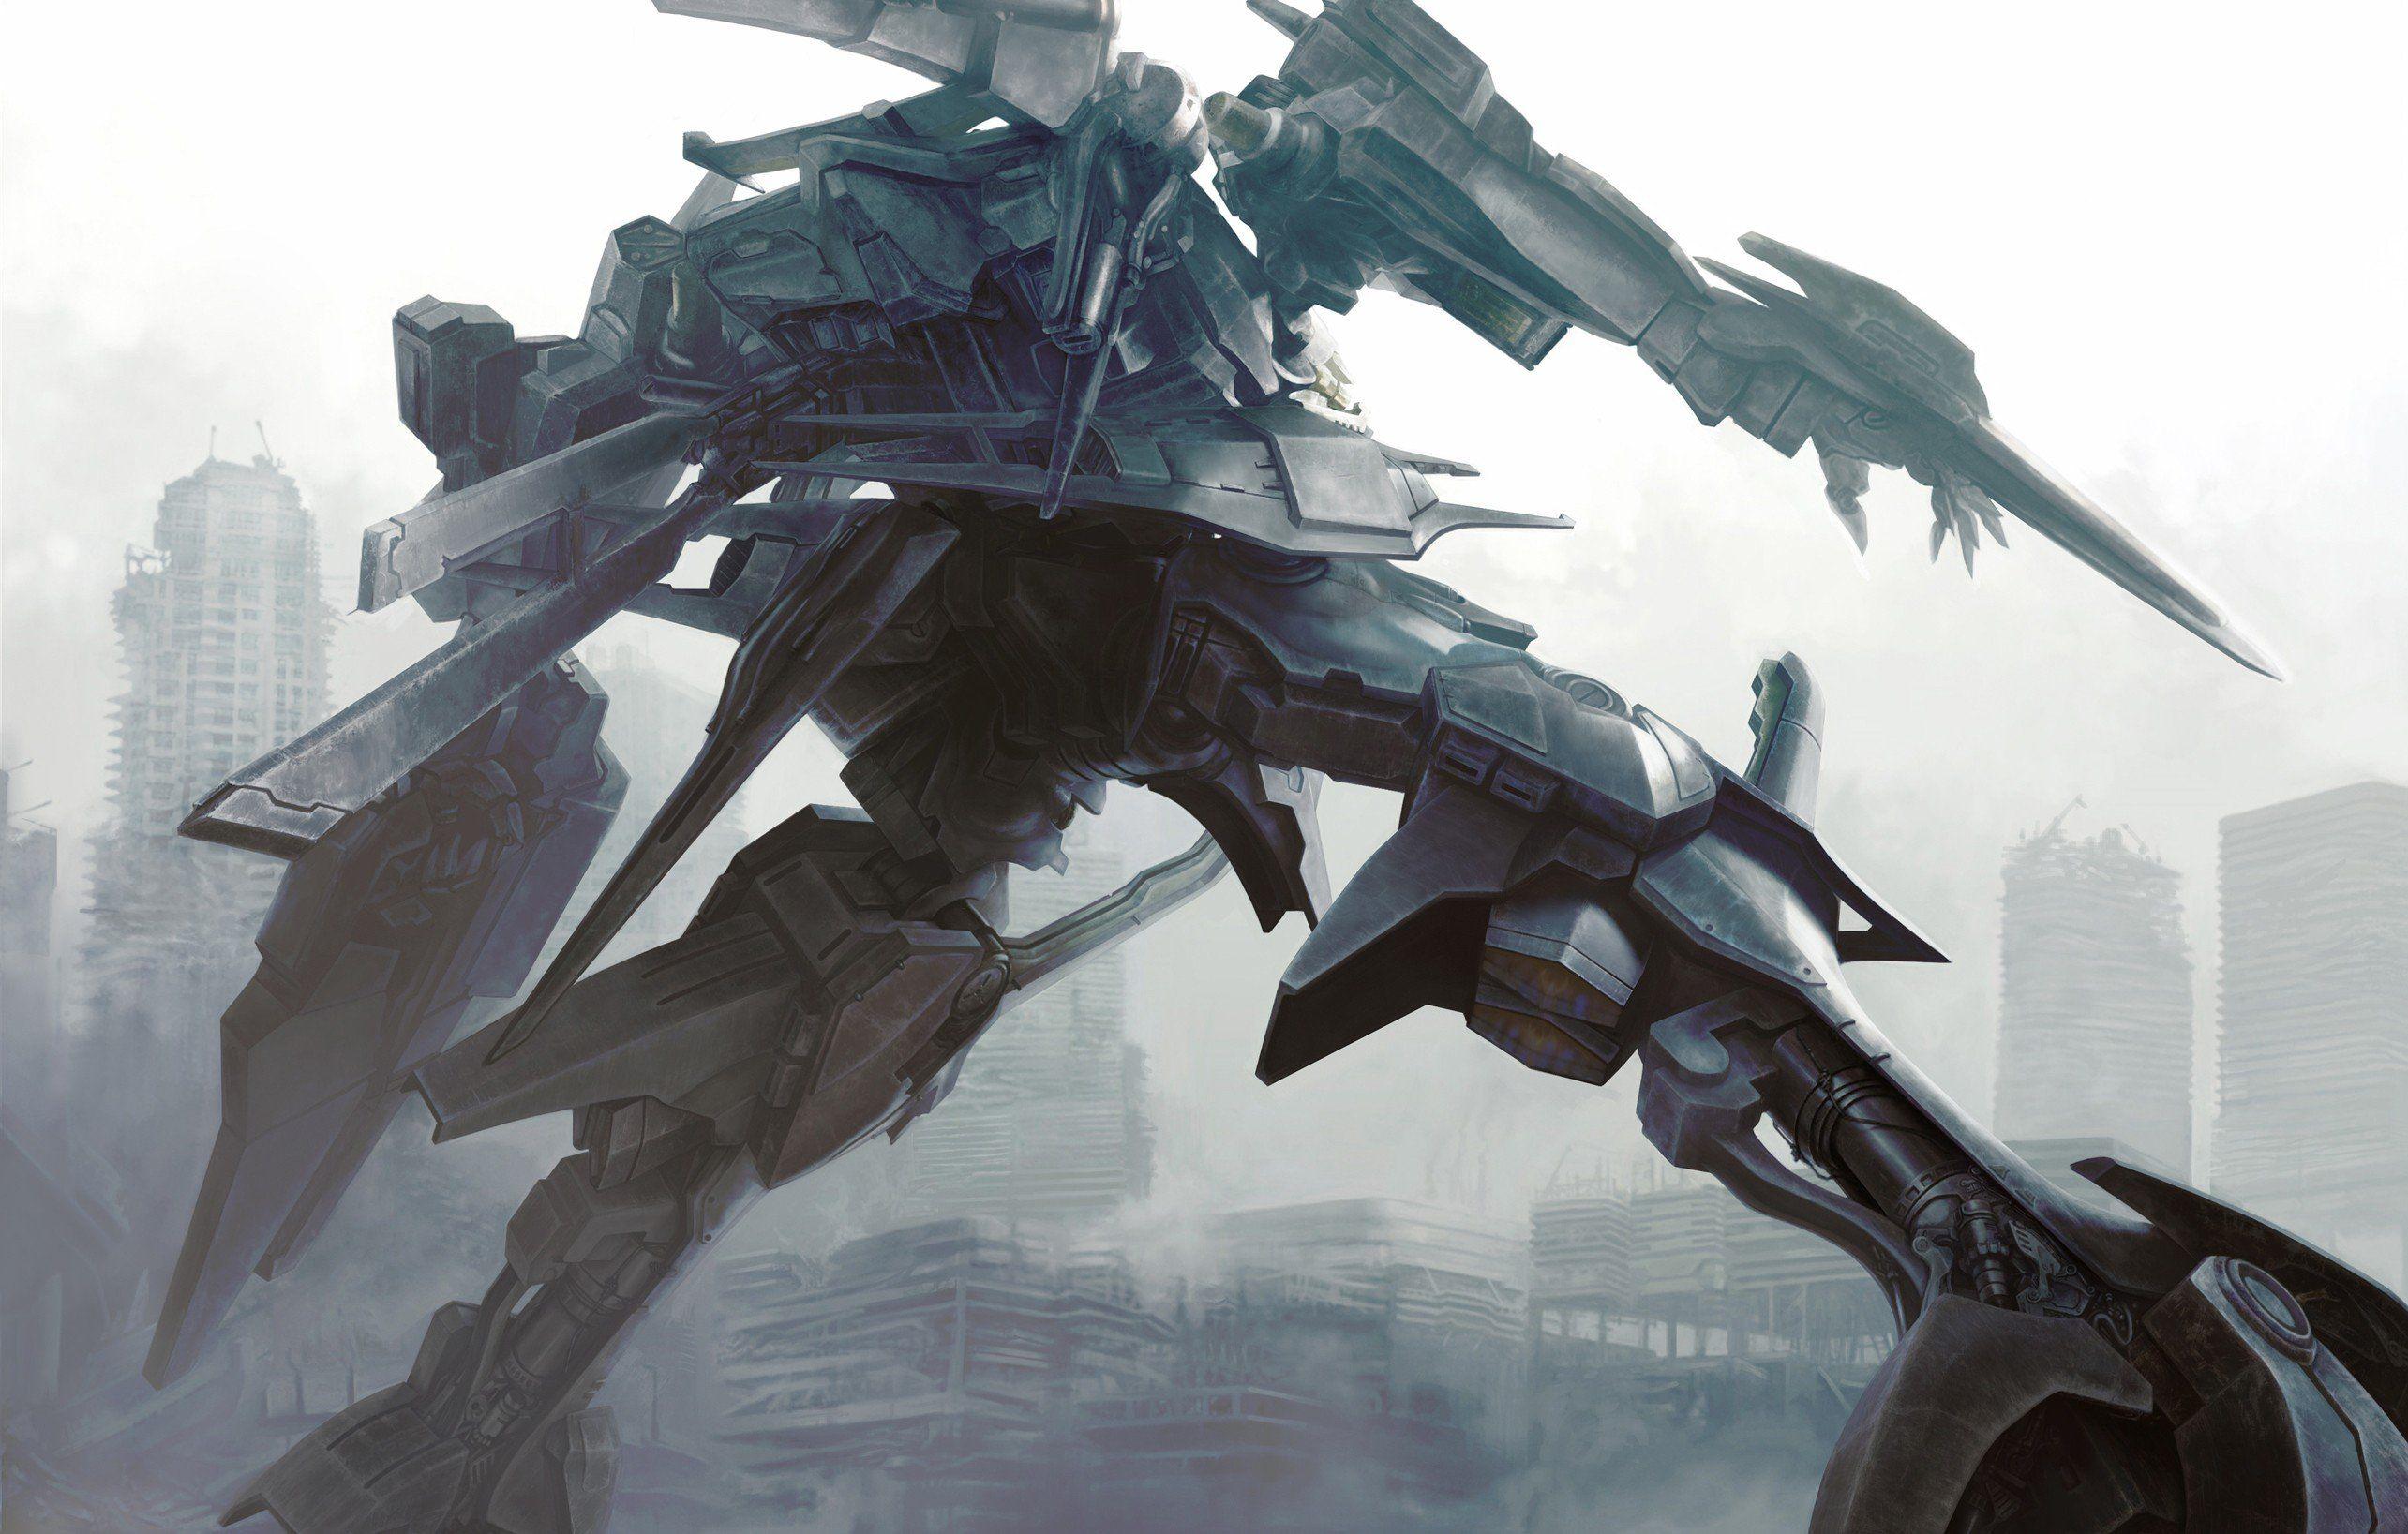 Anime Armored Core Artwork Fantasy Art Mecha Robots. Техника